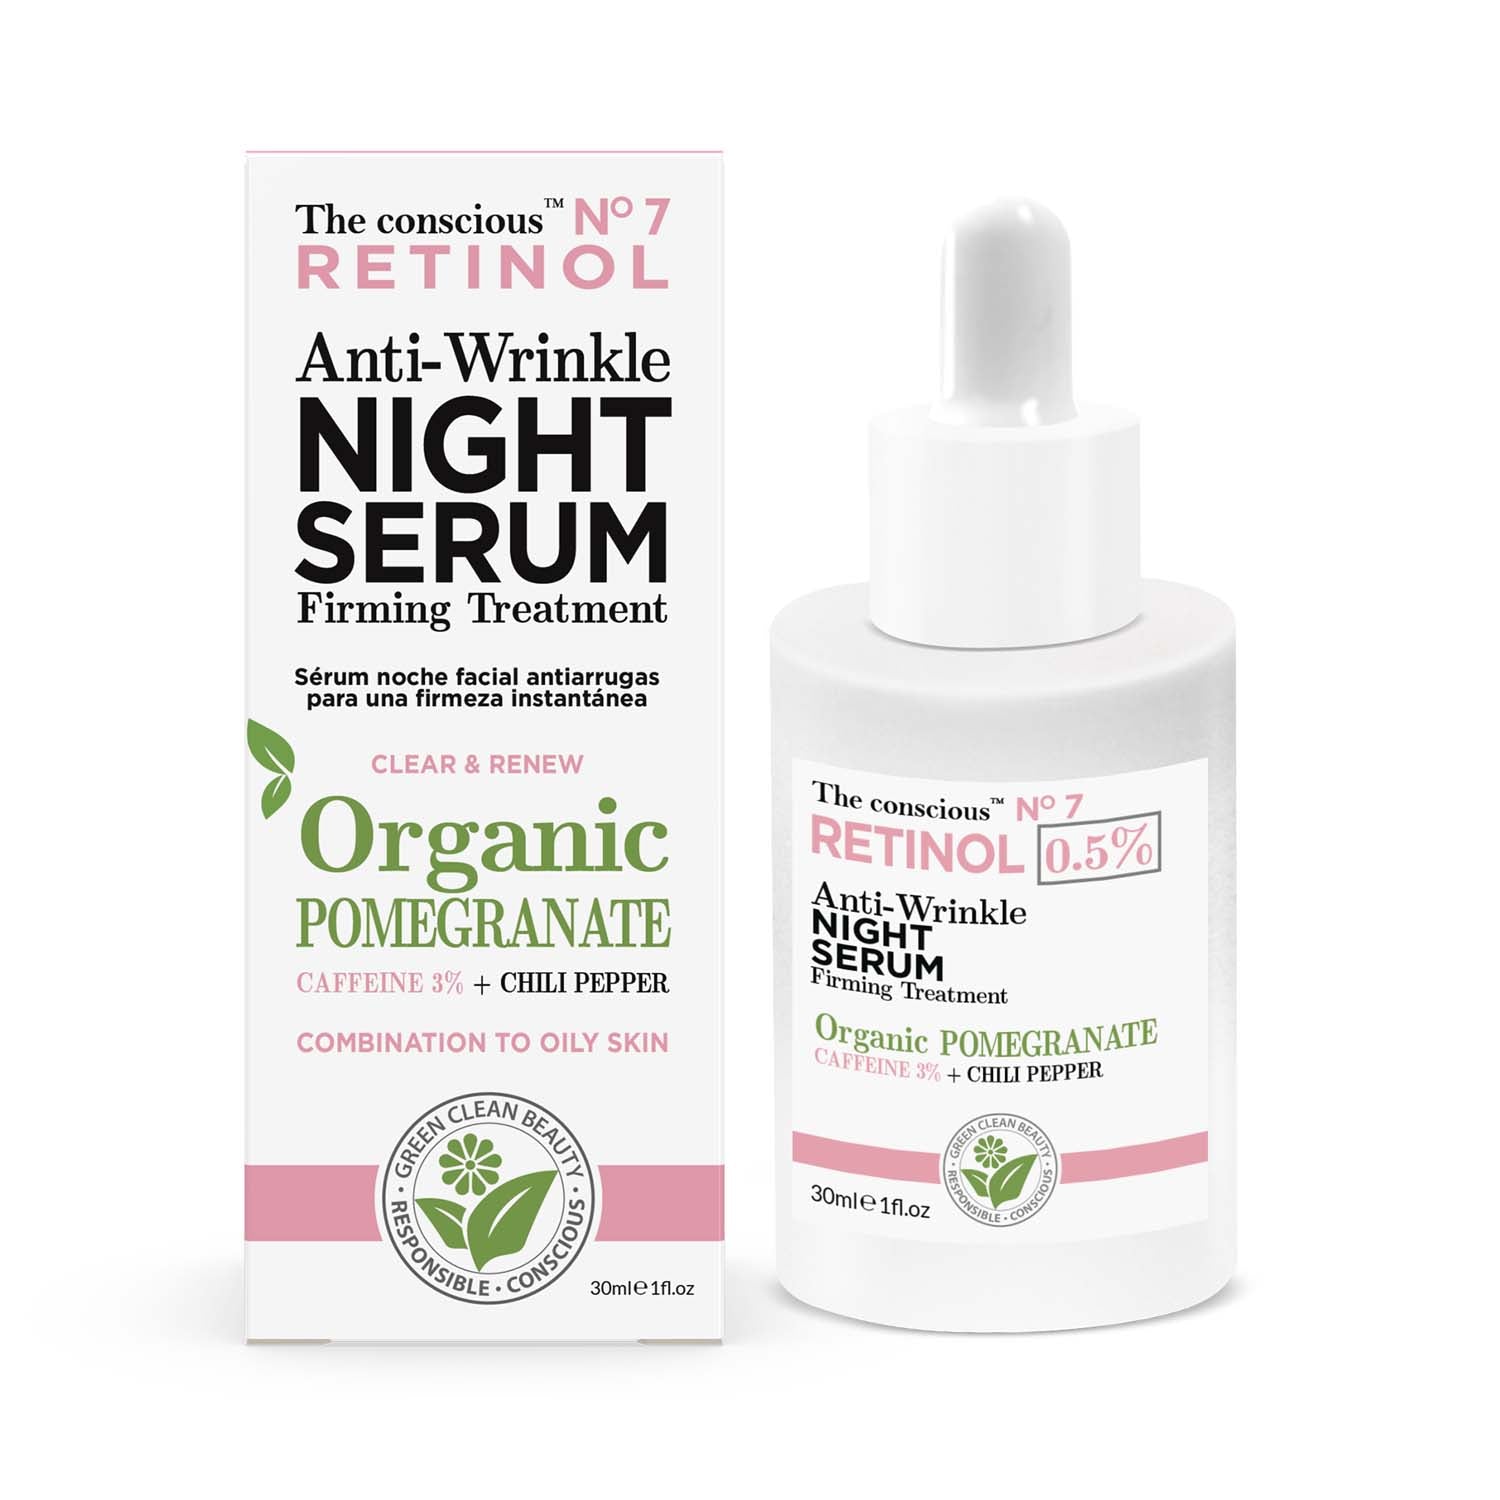 The conscious™ Retinol Anti-Wrinkle Night Serum Organic Pomegranate